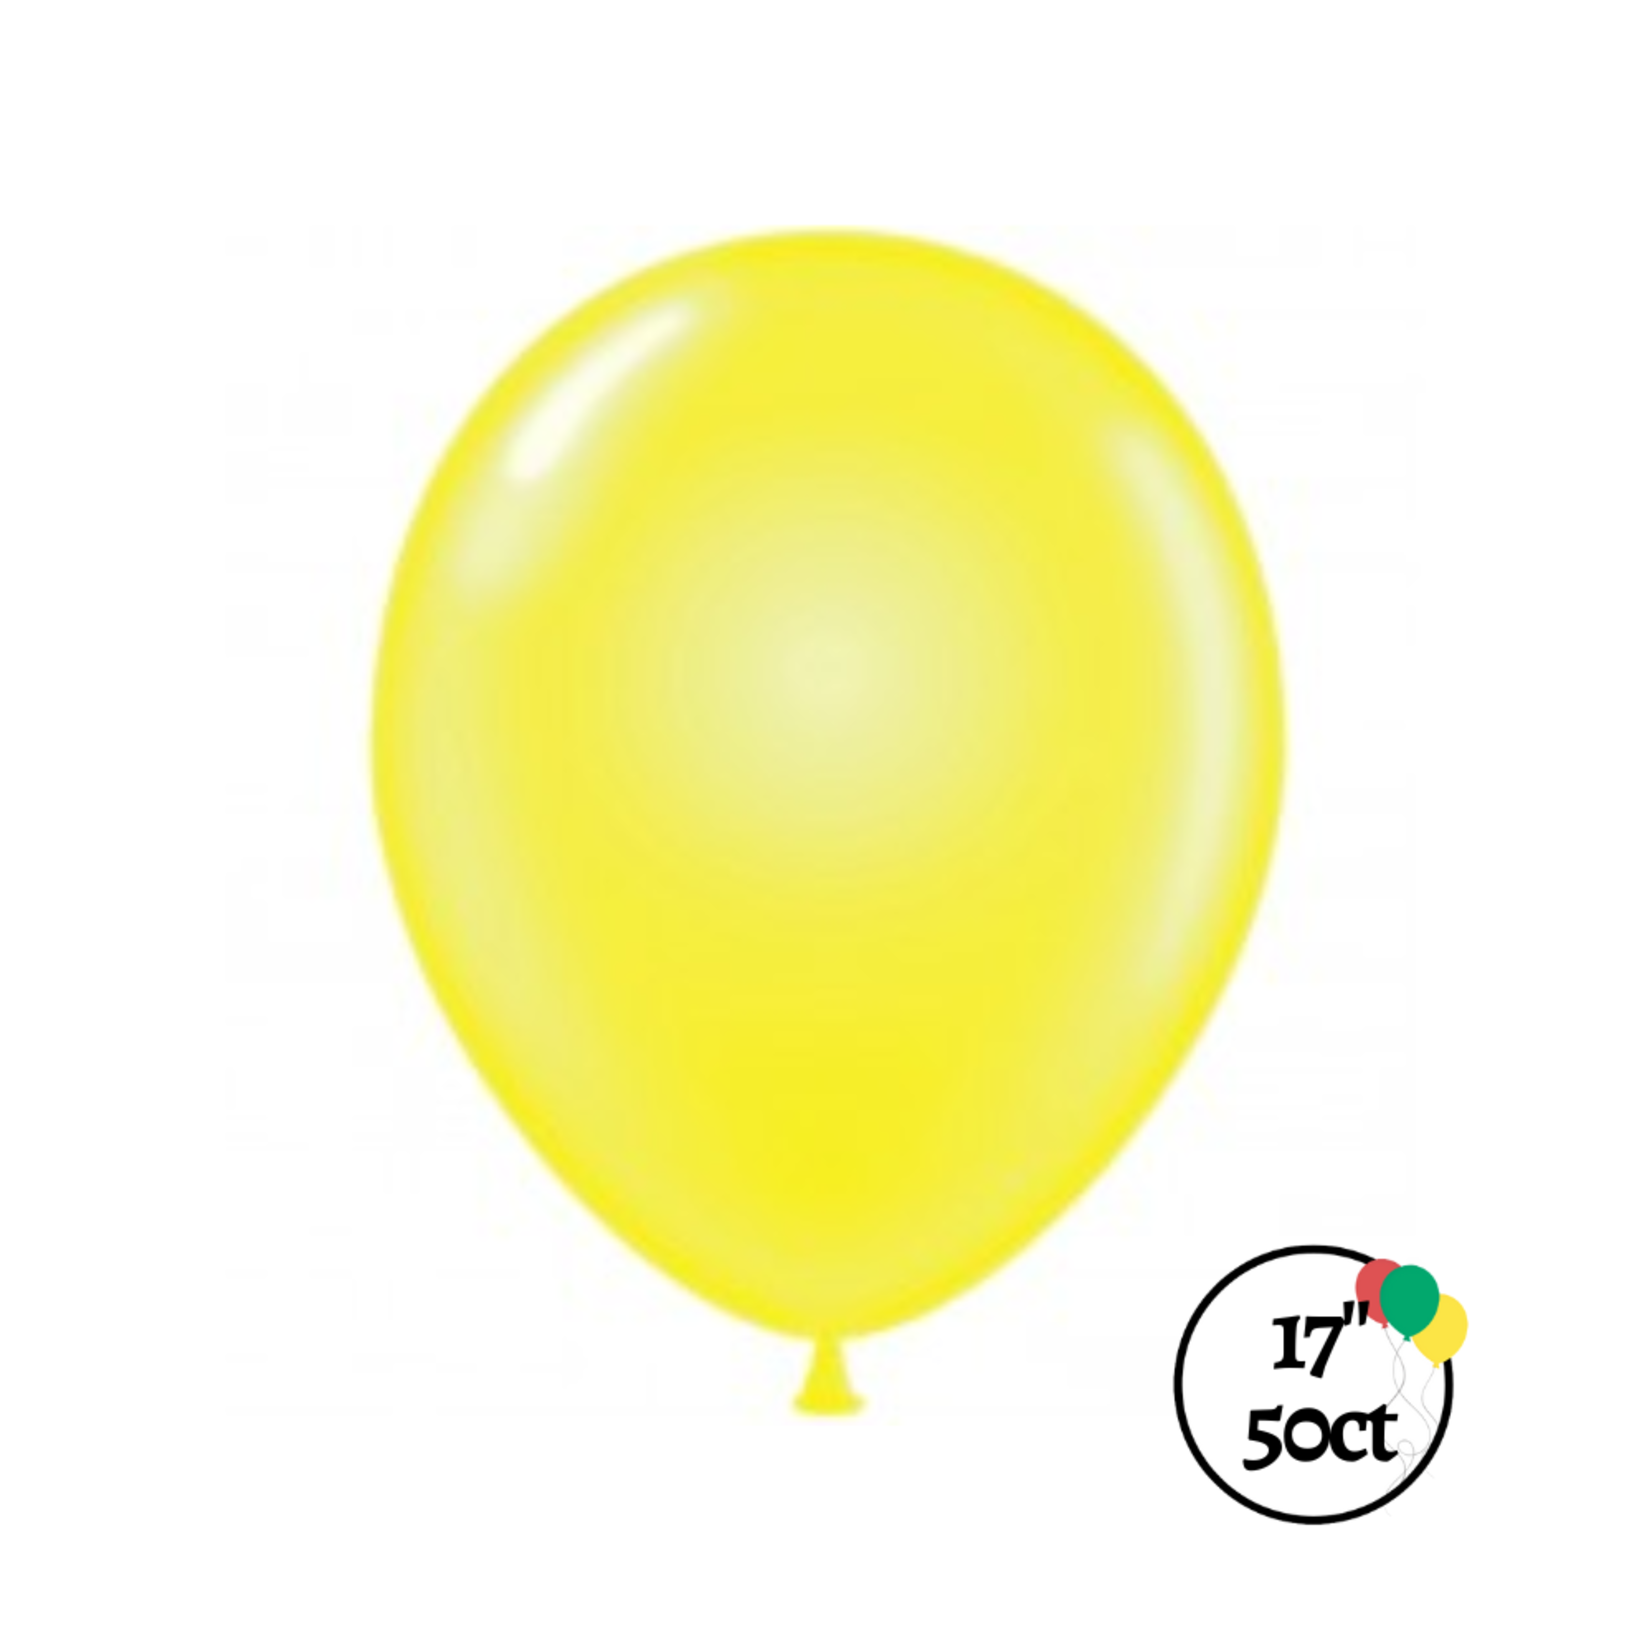 Tuftex 17" Tuftex Crystal Yellow 50ct Balloon